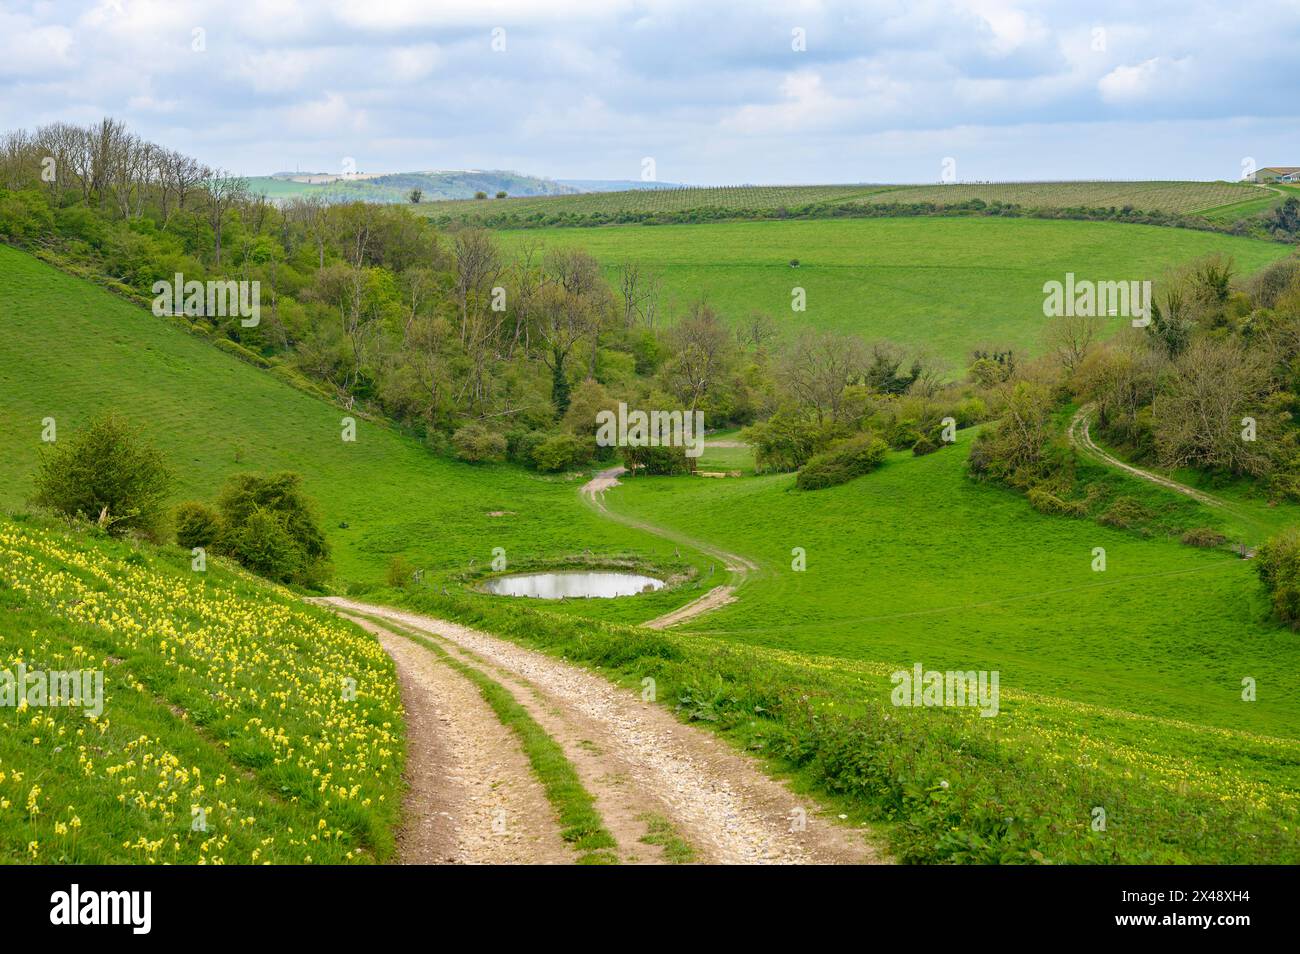 Une route de gravier descend une colline et passe devant un étang de rosée dans la vallée verdoyante du parc national de South Downs près d'Amberley dans le West Sussex, en Angleterre. Banque D'Images